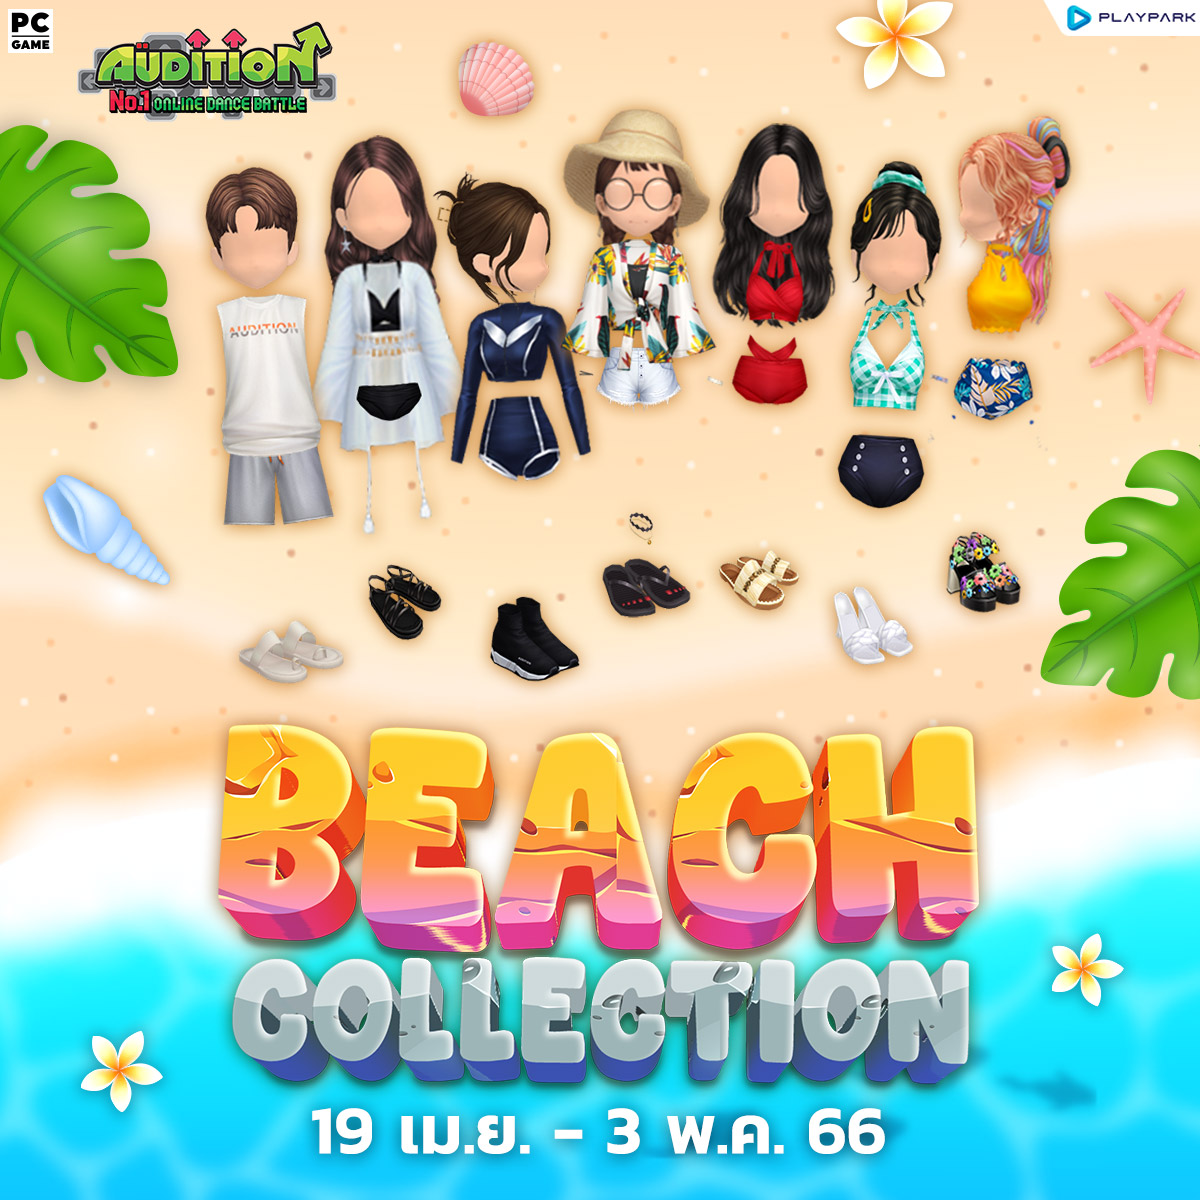 19 เมษายนนี้ Update เพลงใหม่, Beach Collection, Couple Ring และไอเทมใหม่!!  